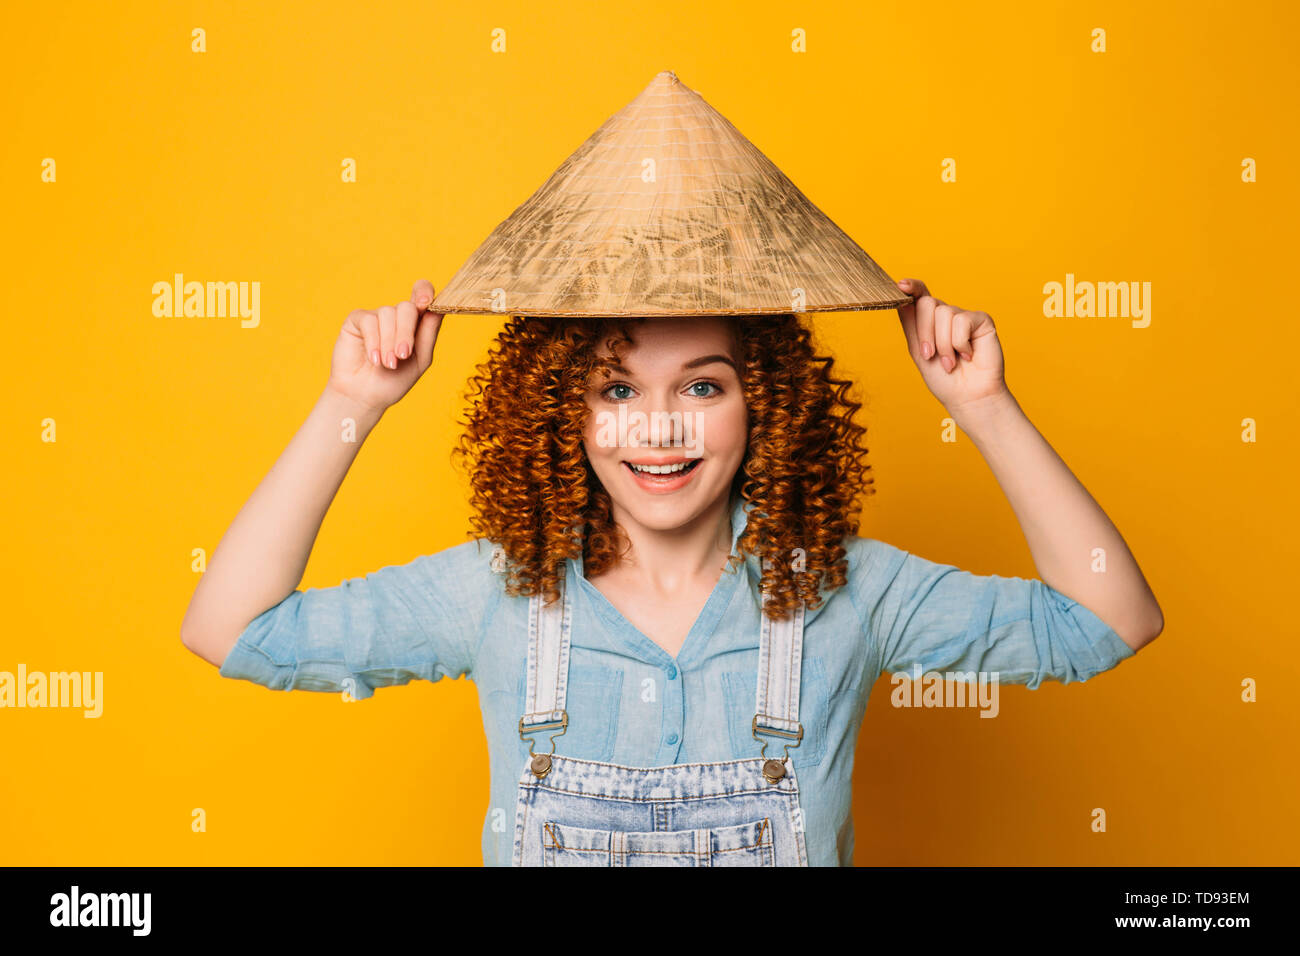 Red-haired woman bouclés dans un chapeau chinois est en train de rire, sur un fond jaune. Voyage à l'Est, la Chine et l'Asie. Banque D'Images